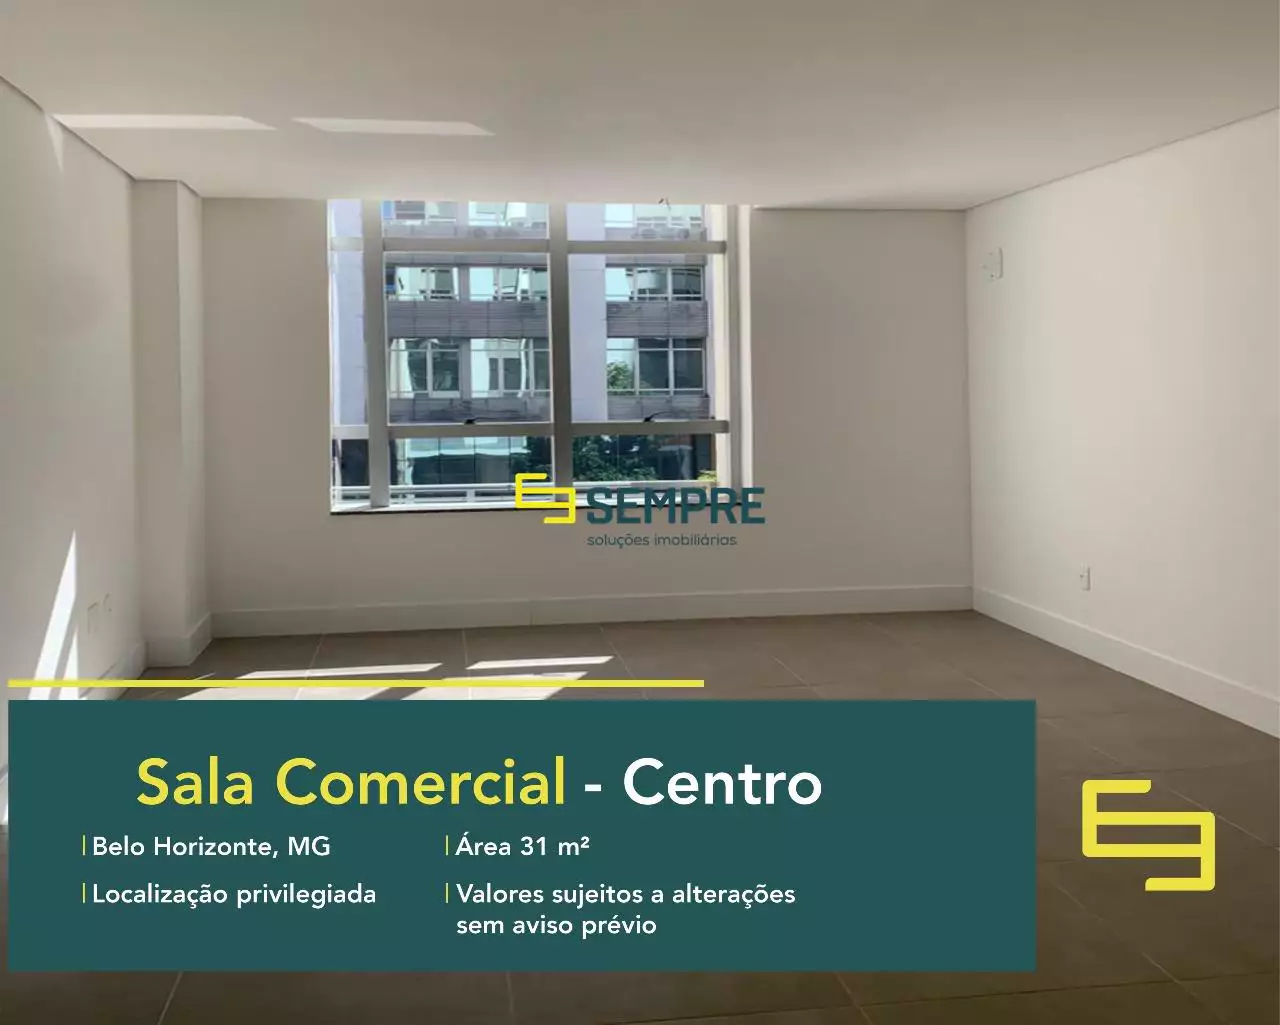 Aluguel de sala comercial em Belo Horizonte no Centro, em excelente localização. O ponto comercial conta com área de 31,34 m².